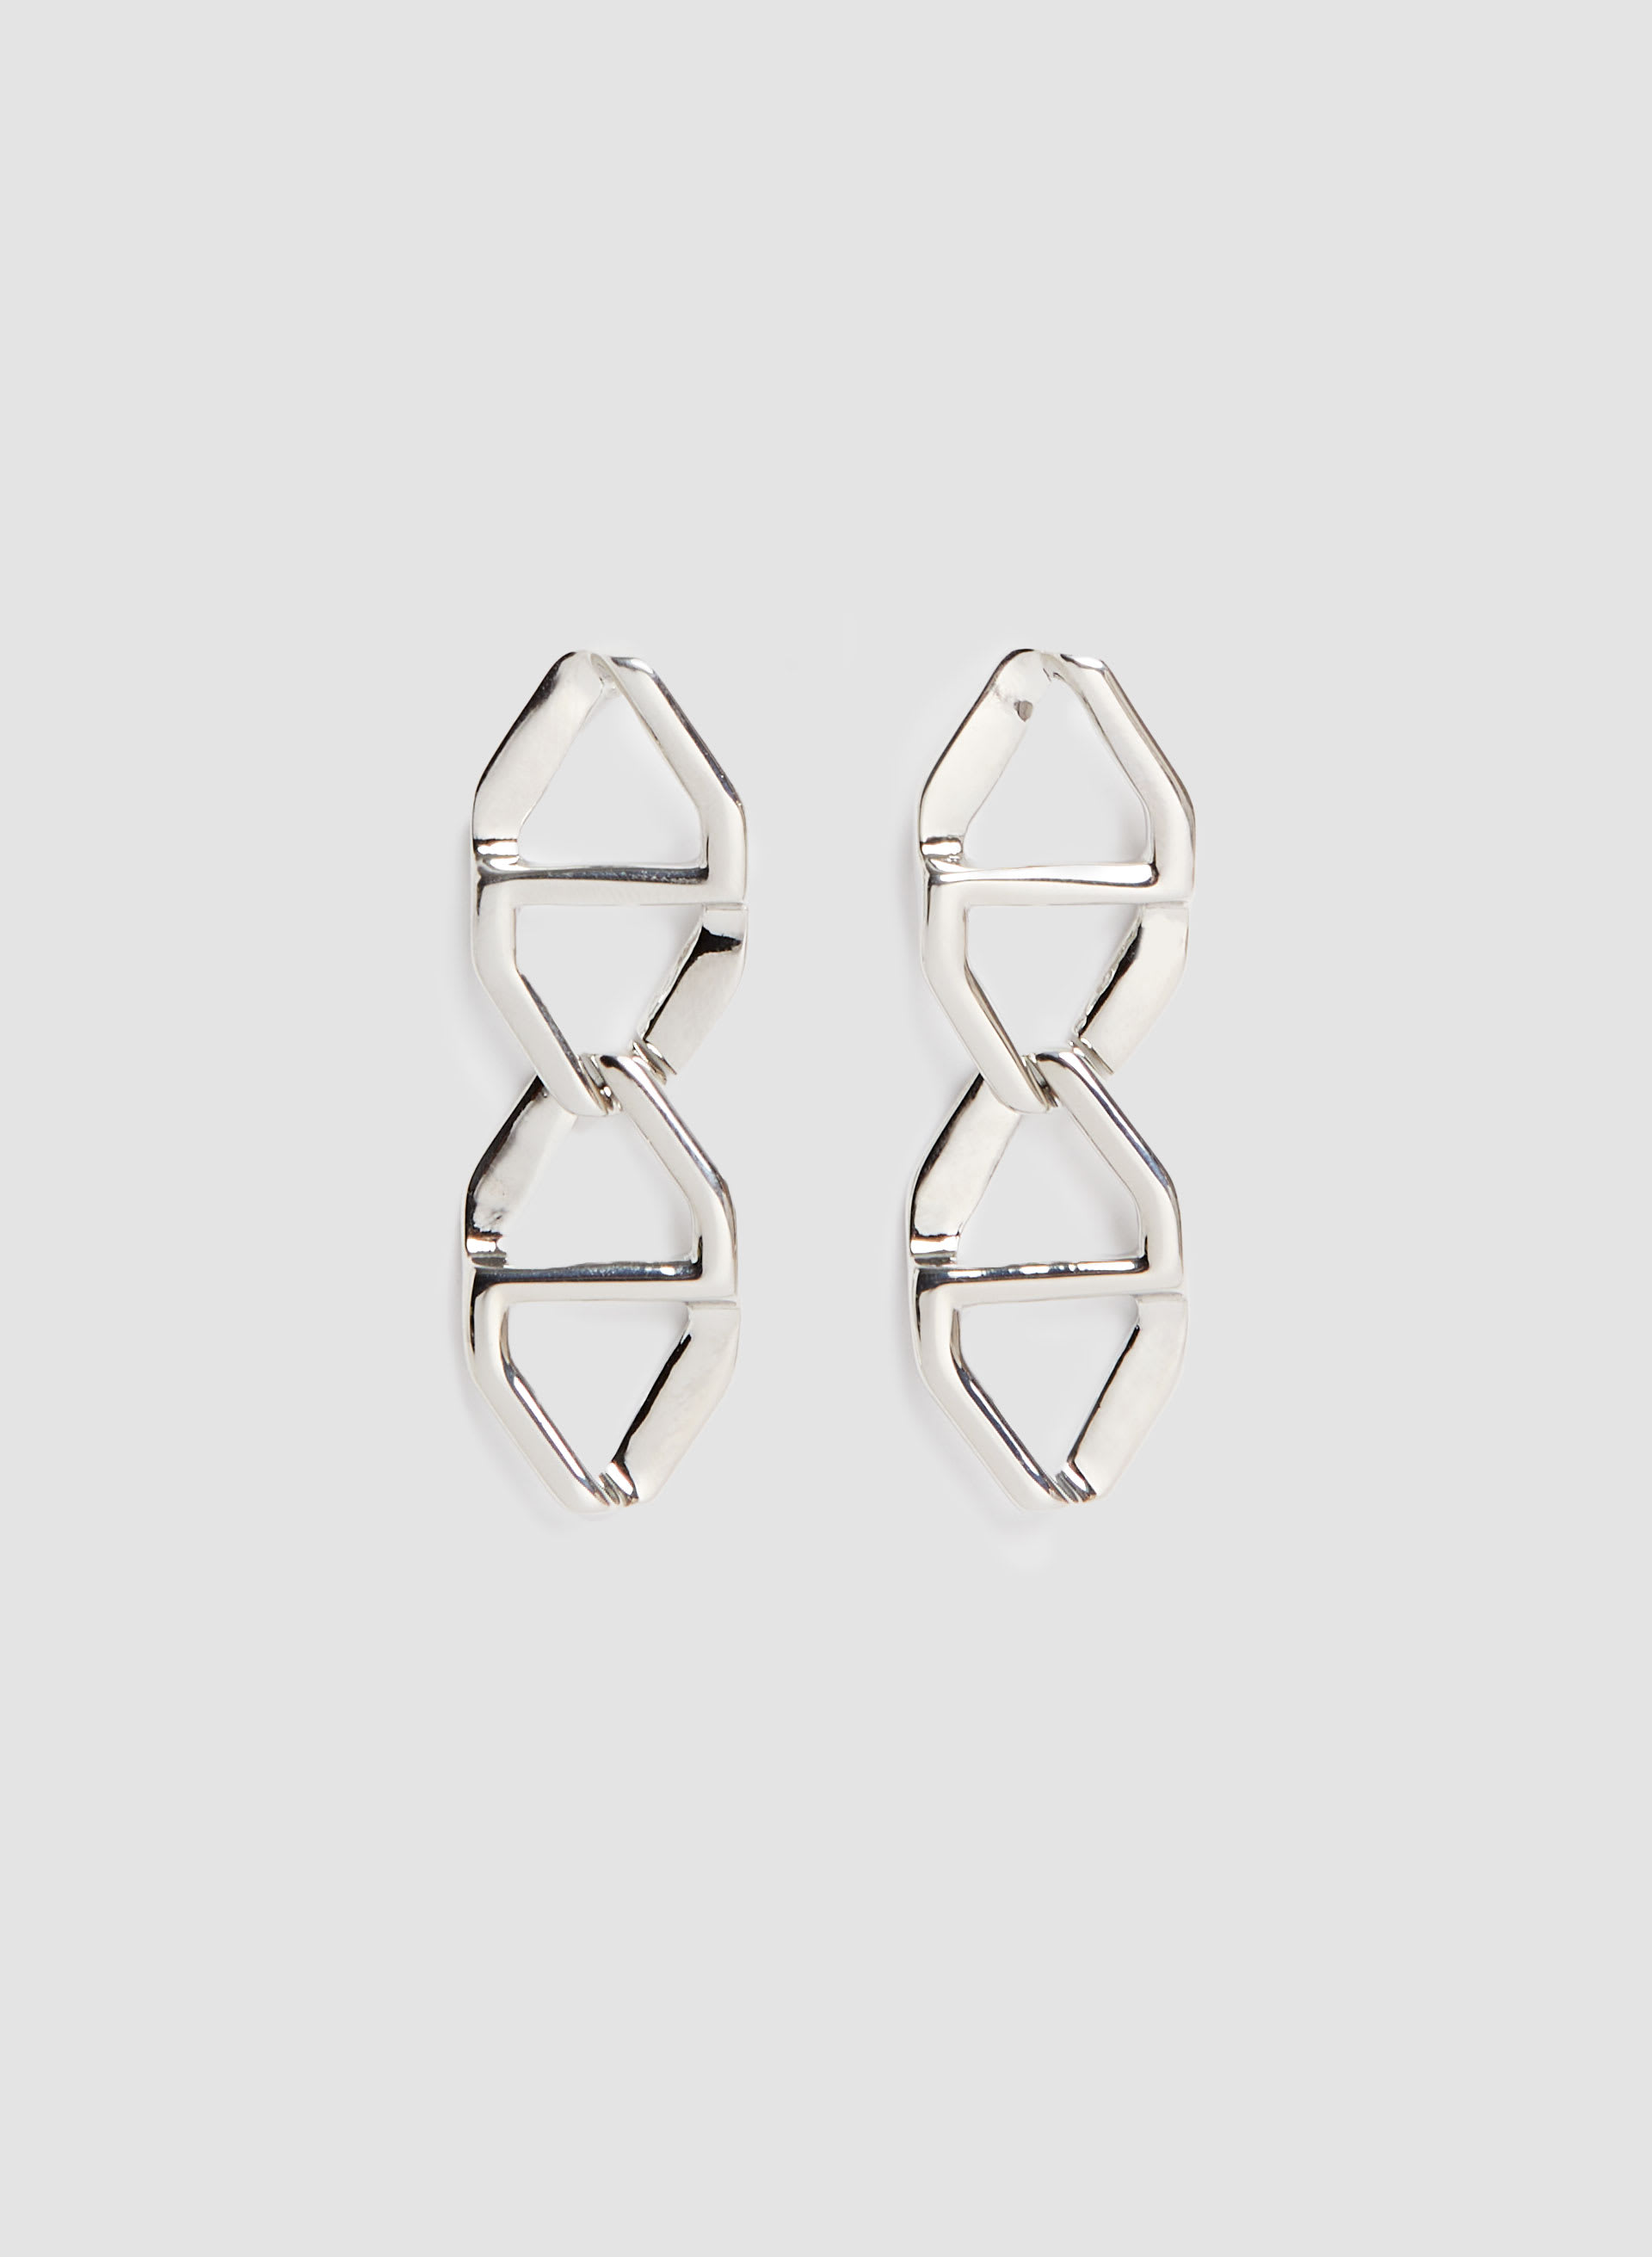 Two Tier Geometric Dangle Earrings